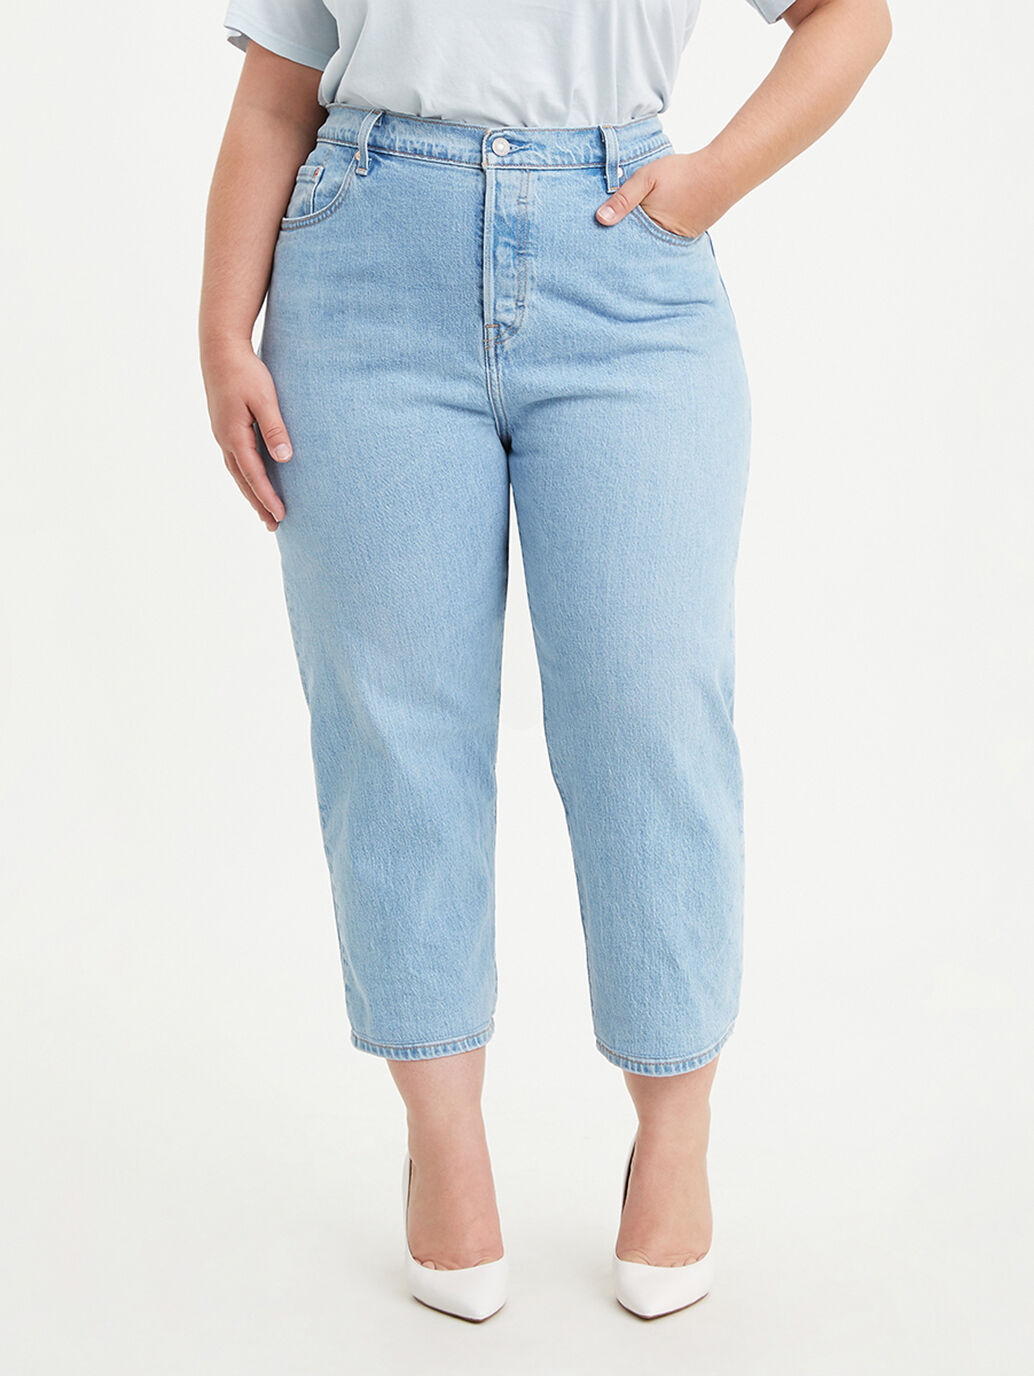 levis jeans plus women's sizes